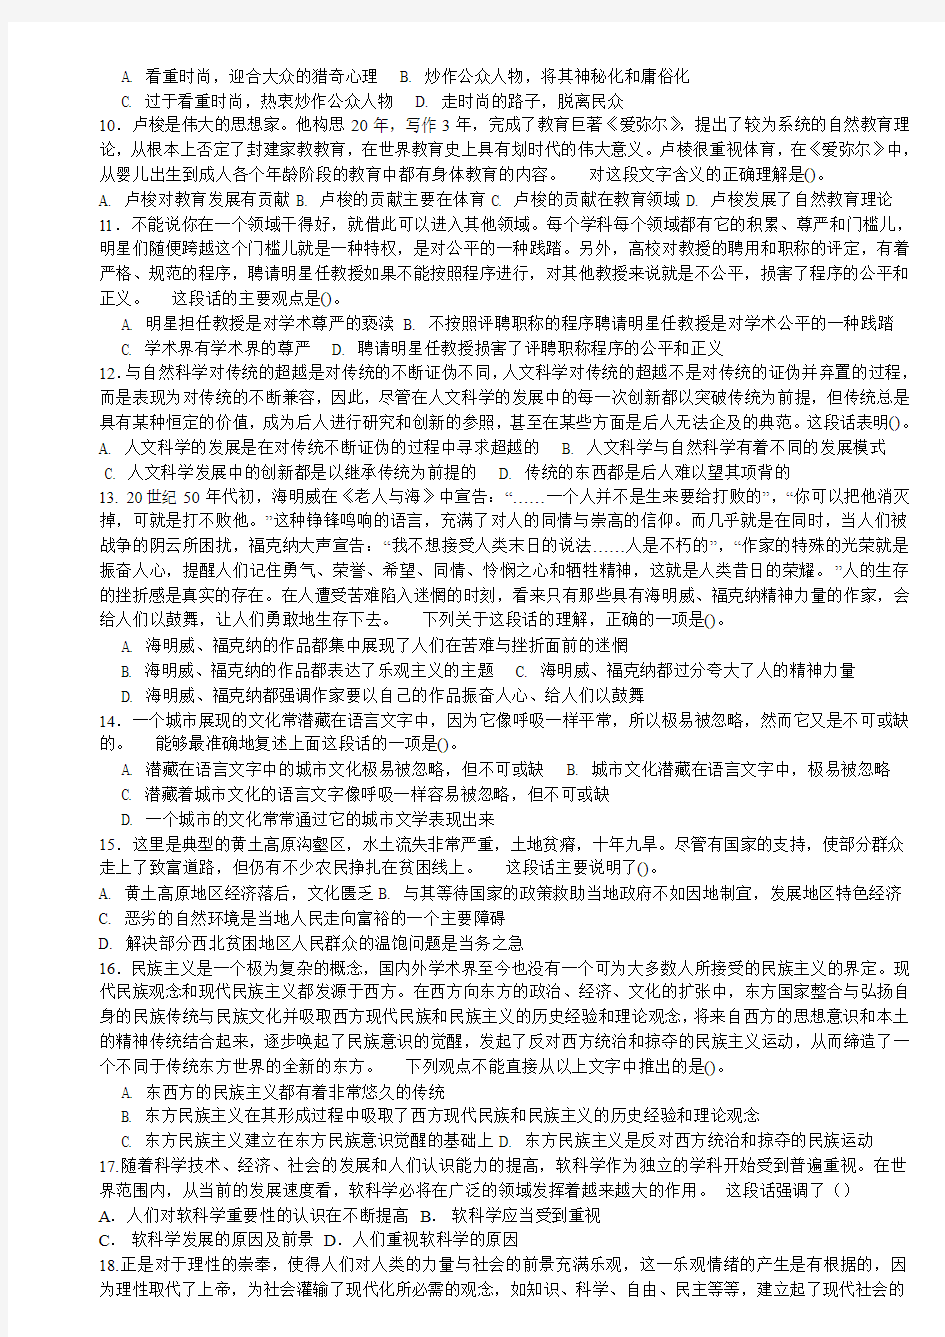 2008年河北省公务员考试行测真题及答案(个人整理,130题打印版)